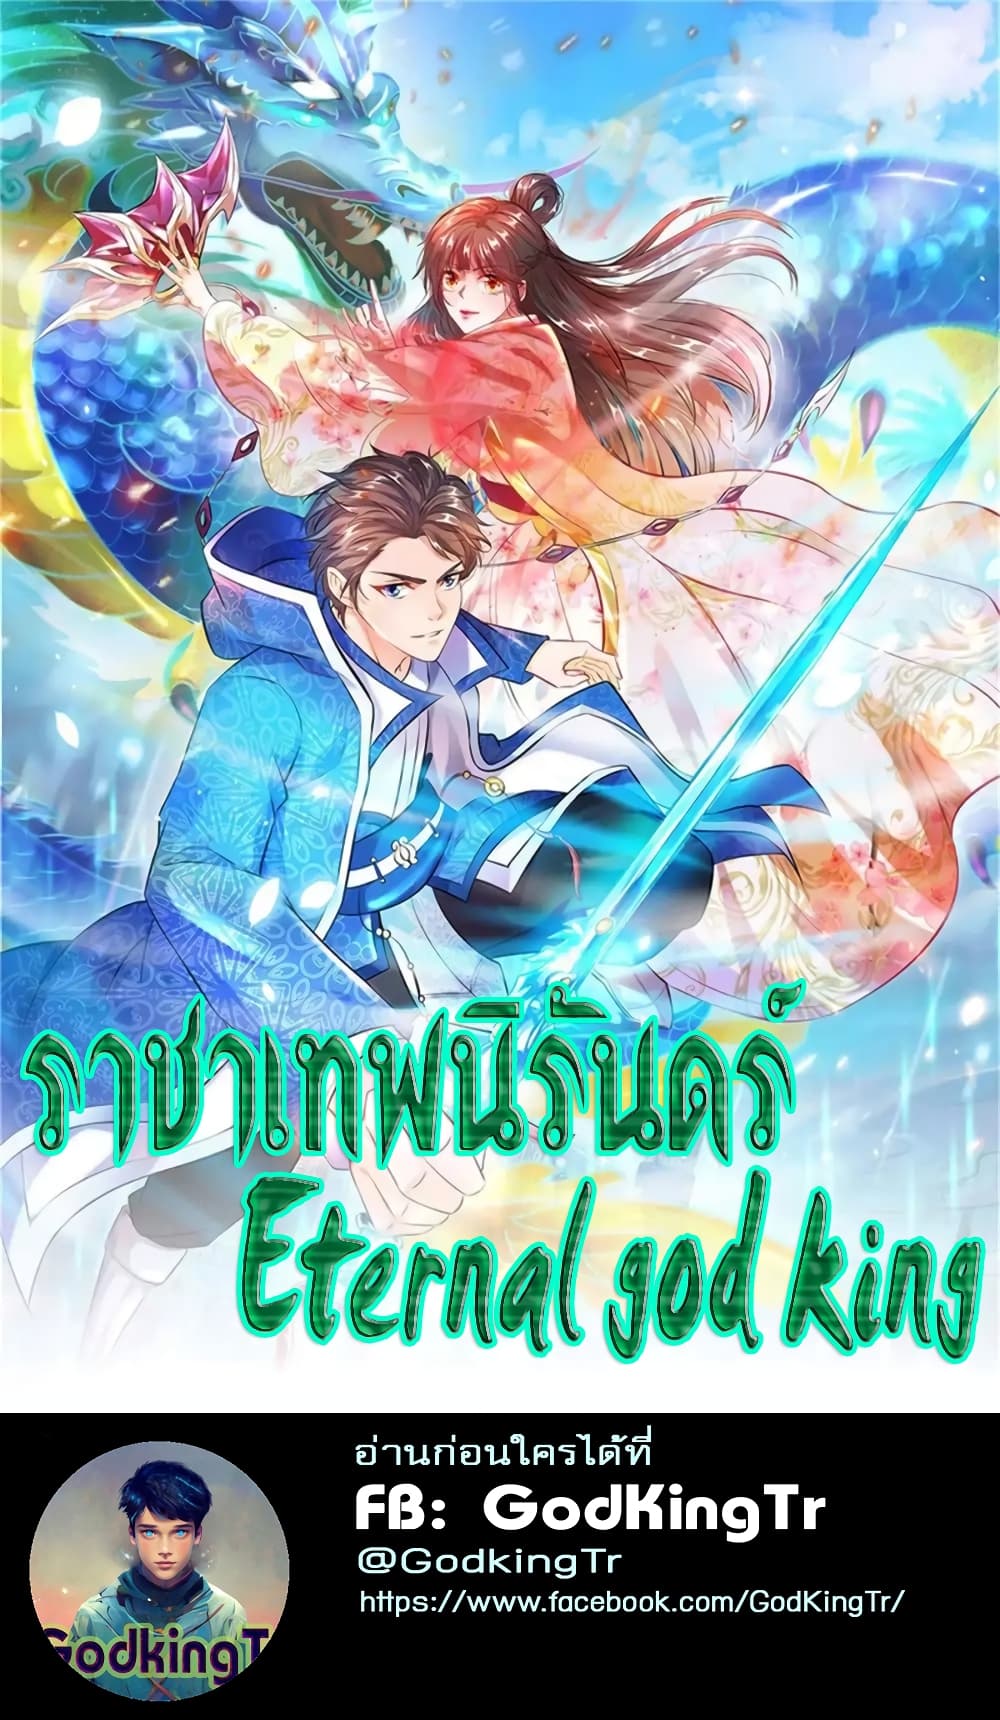 Eternal god King 89 01